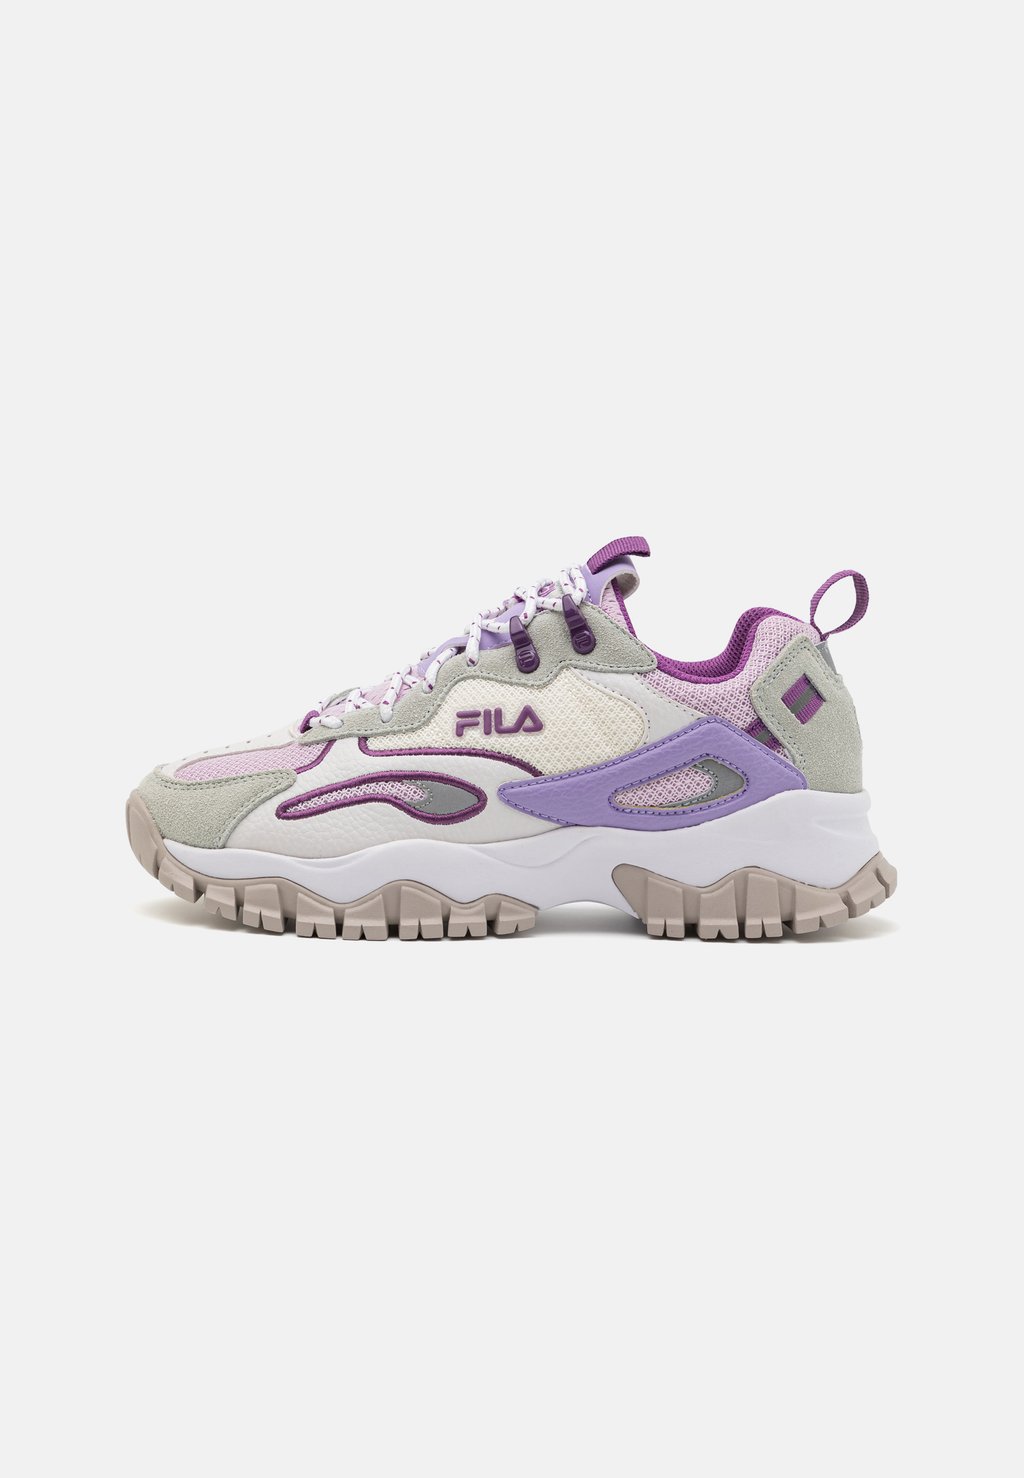 Низкие кроссовки Ray Tracer Fila, цвет gray violet/lavender fog